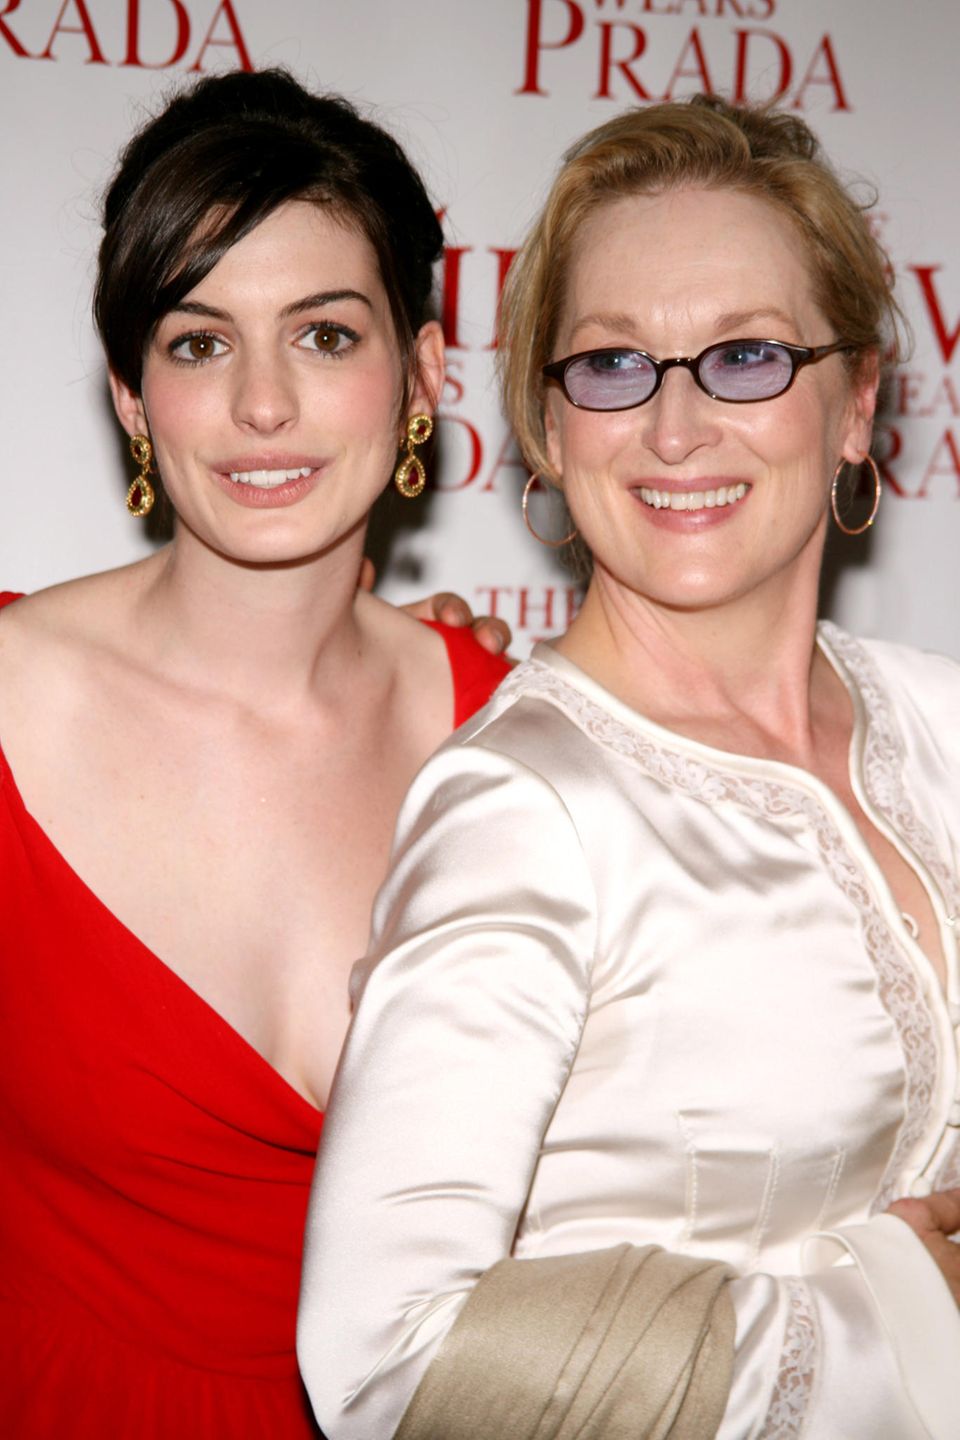 2006 feiert die Komödie "Der Teufel trägt Prada" Premiere, in der Meryl Streep neben Anne Hathaway brilliert.